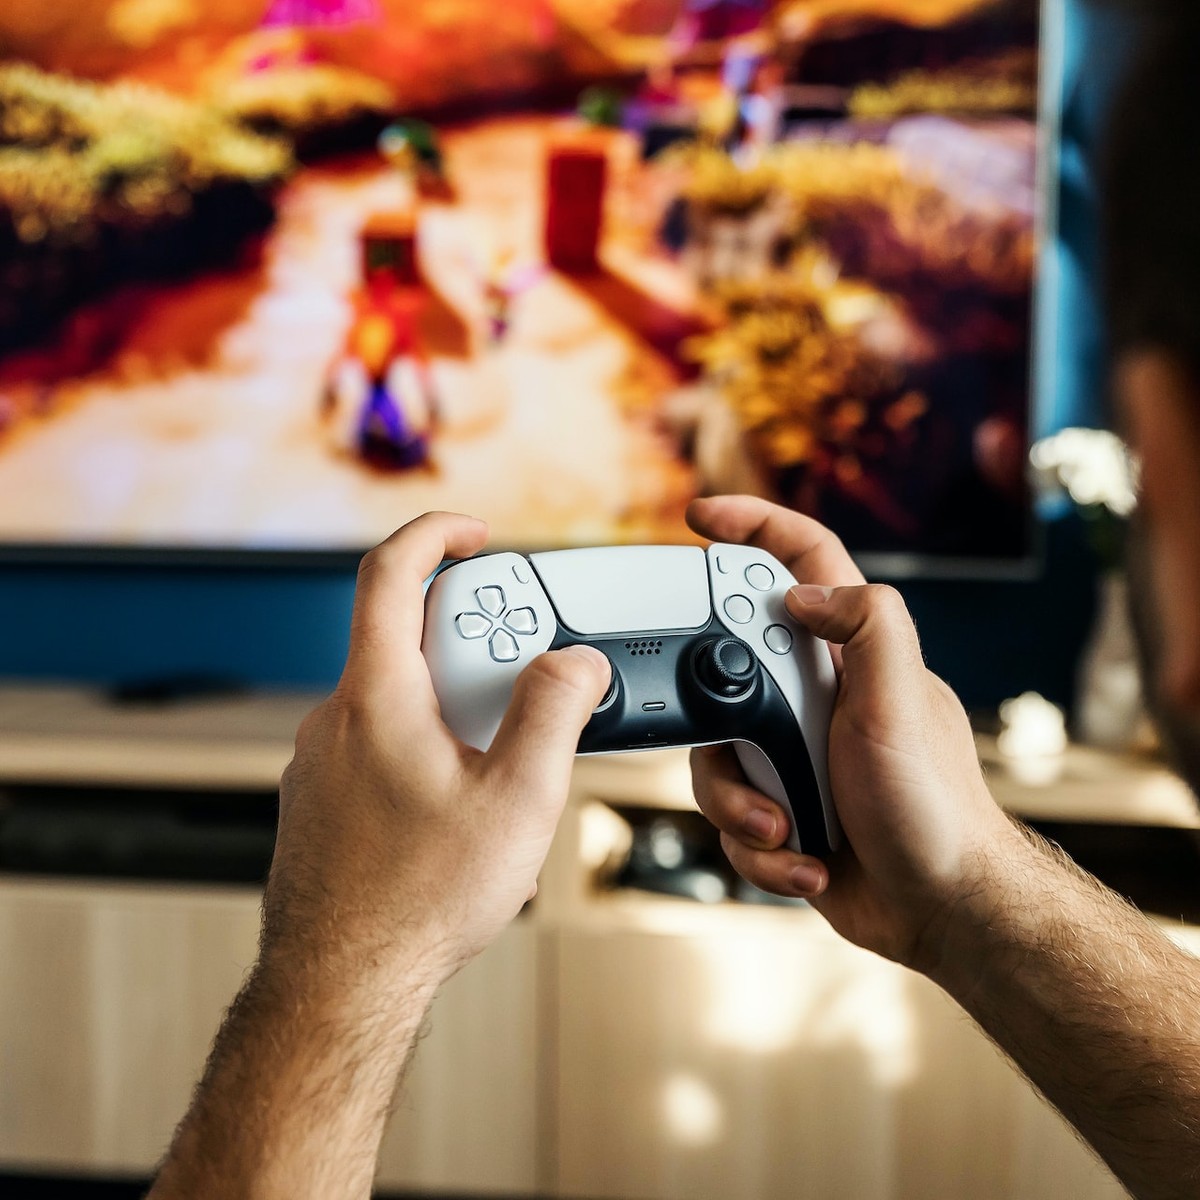 Público gamer cresce e 3 em cada 4 brasileiros consomem jogos eletrônicos